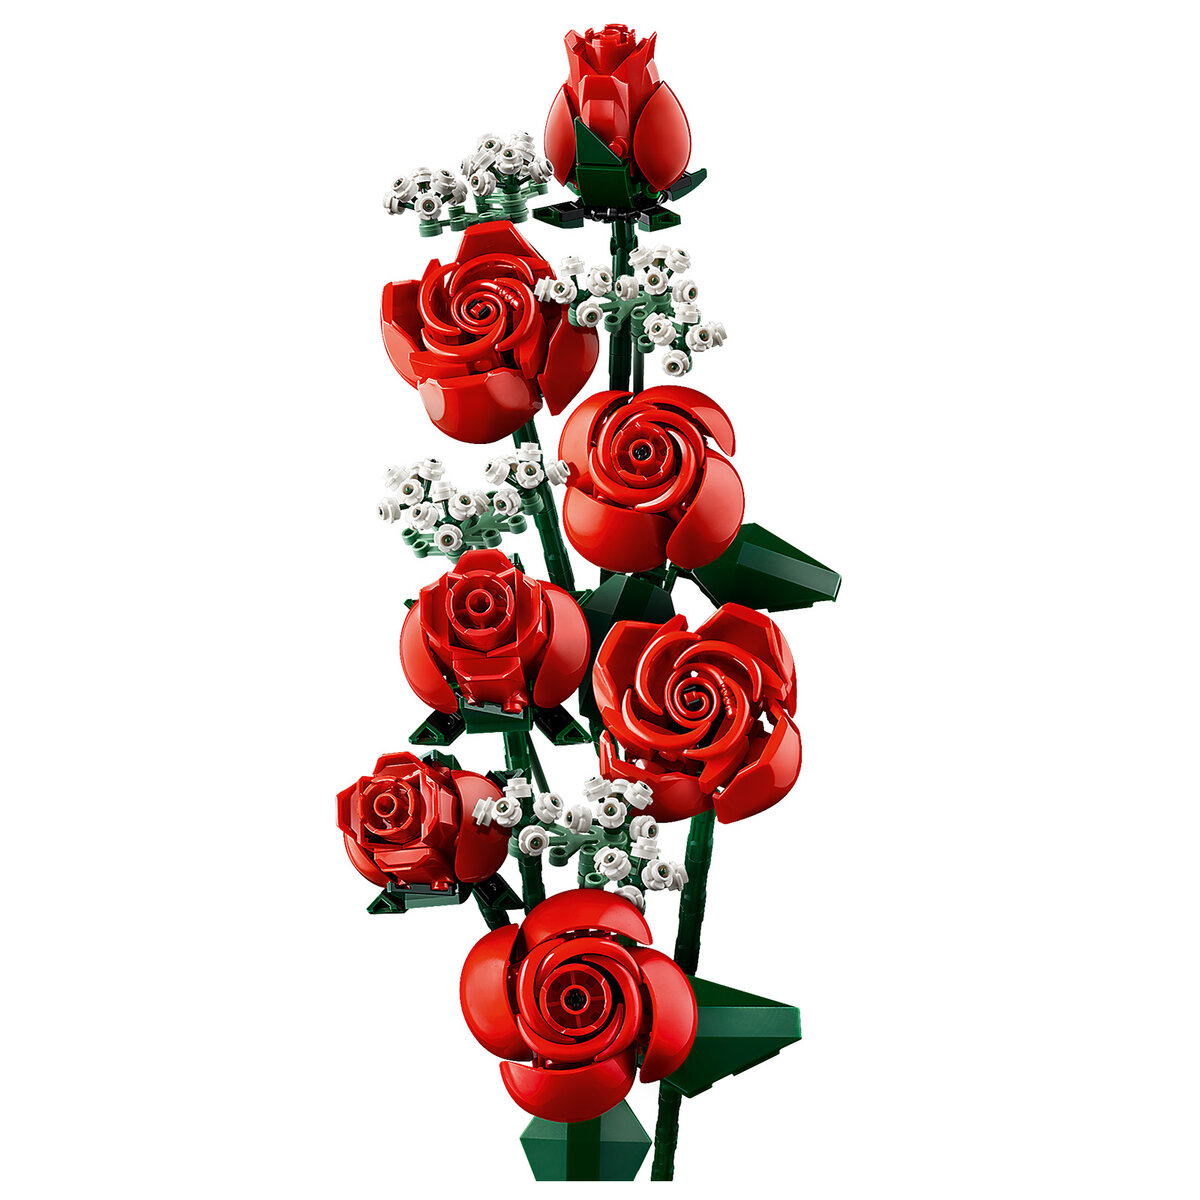 LEGO Icons 10328 Bouquet of Roses (Botanical Collection) : le set est en  ligne sur le Shop - HelloBricks